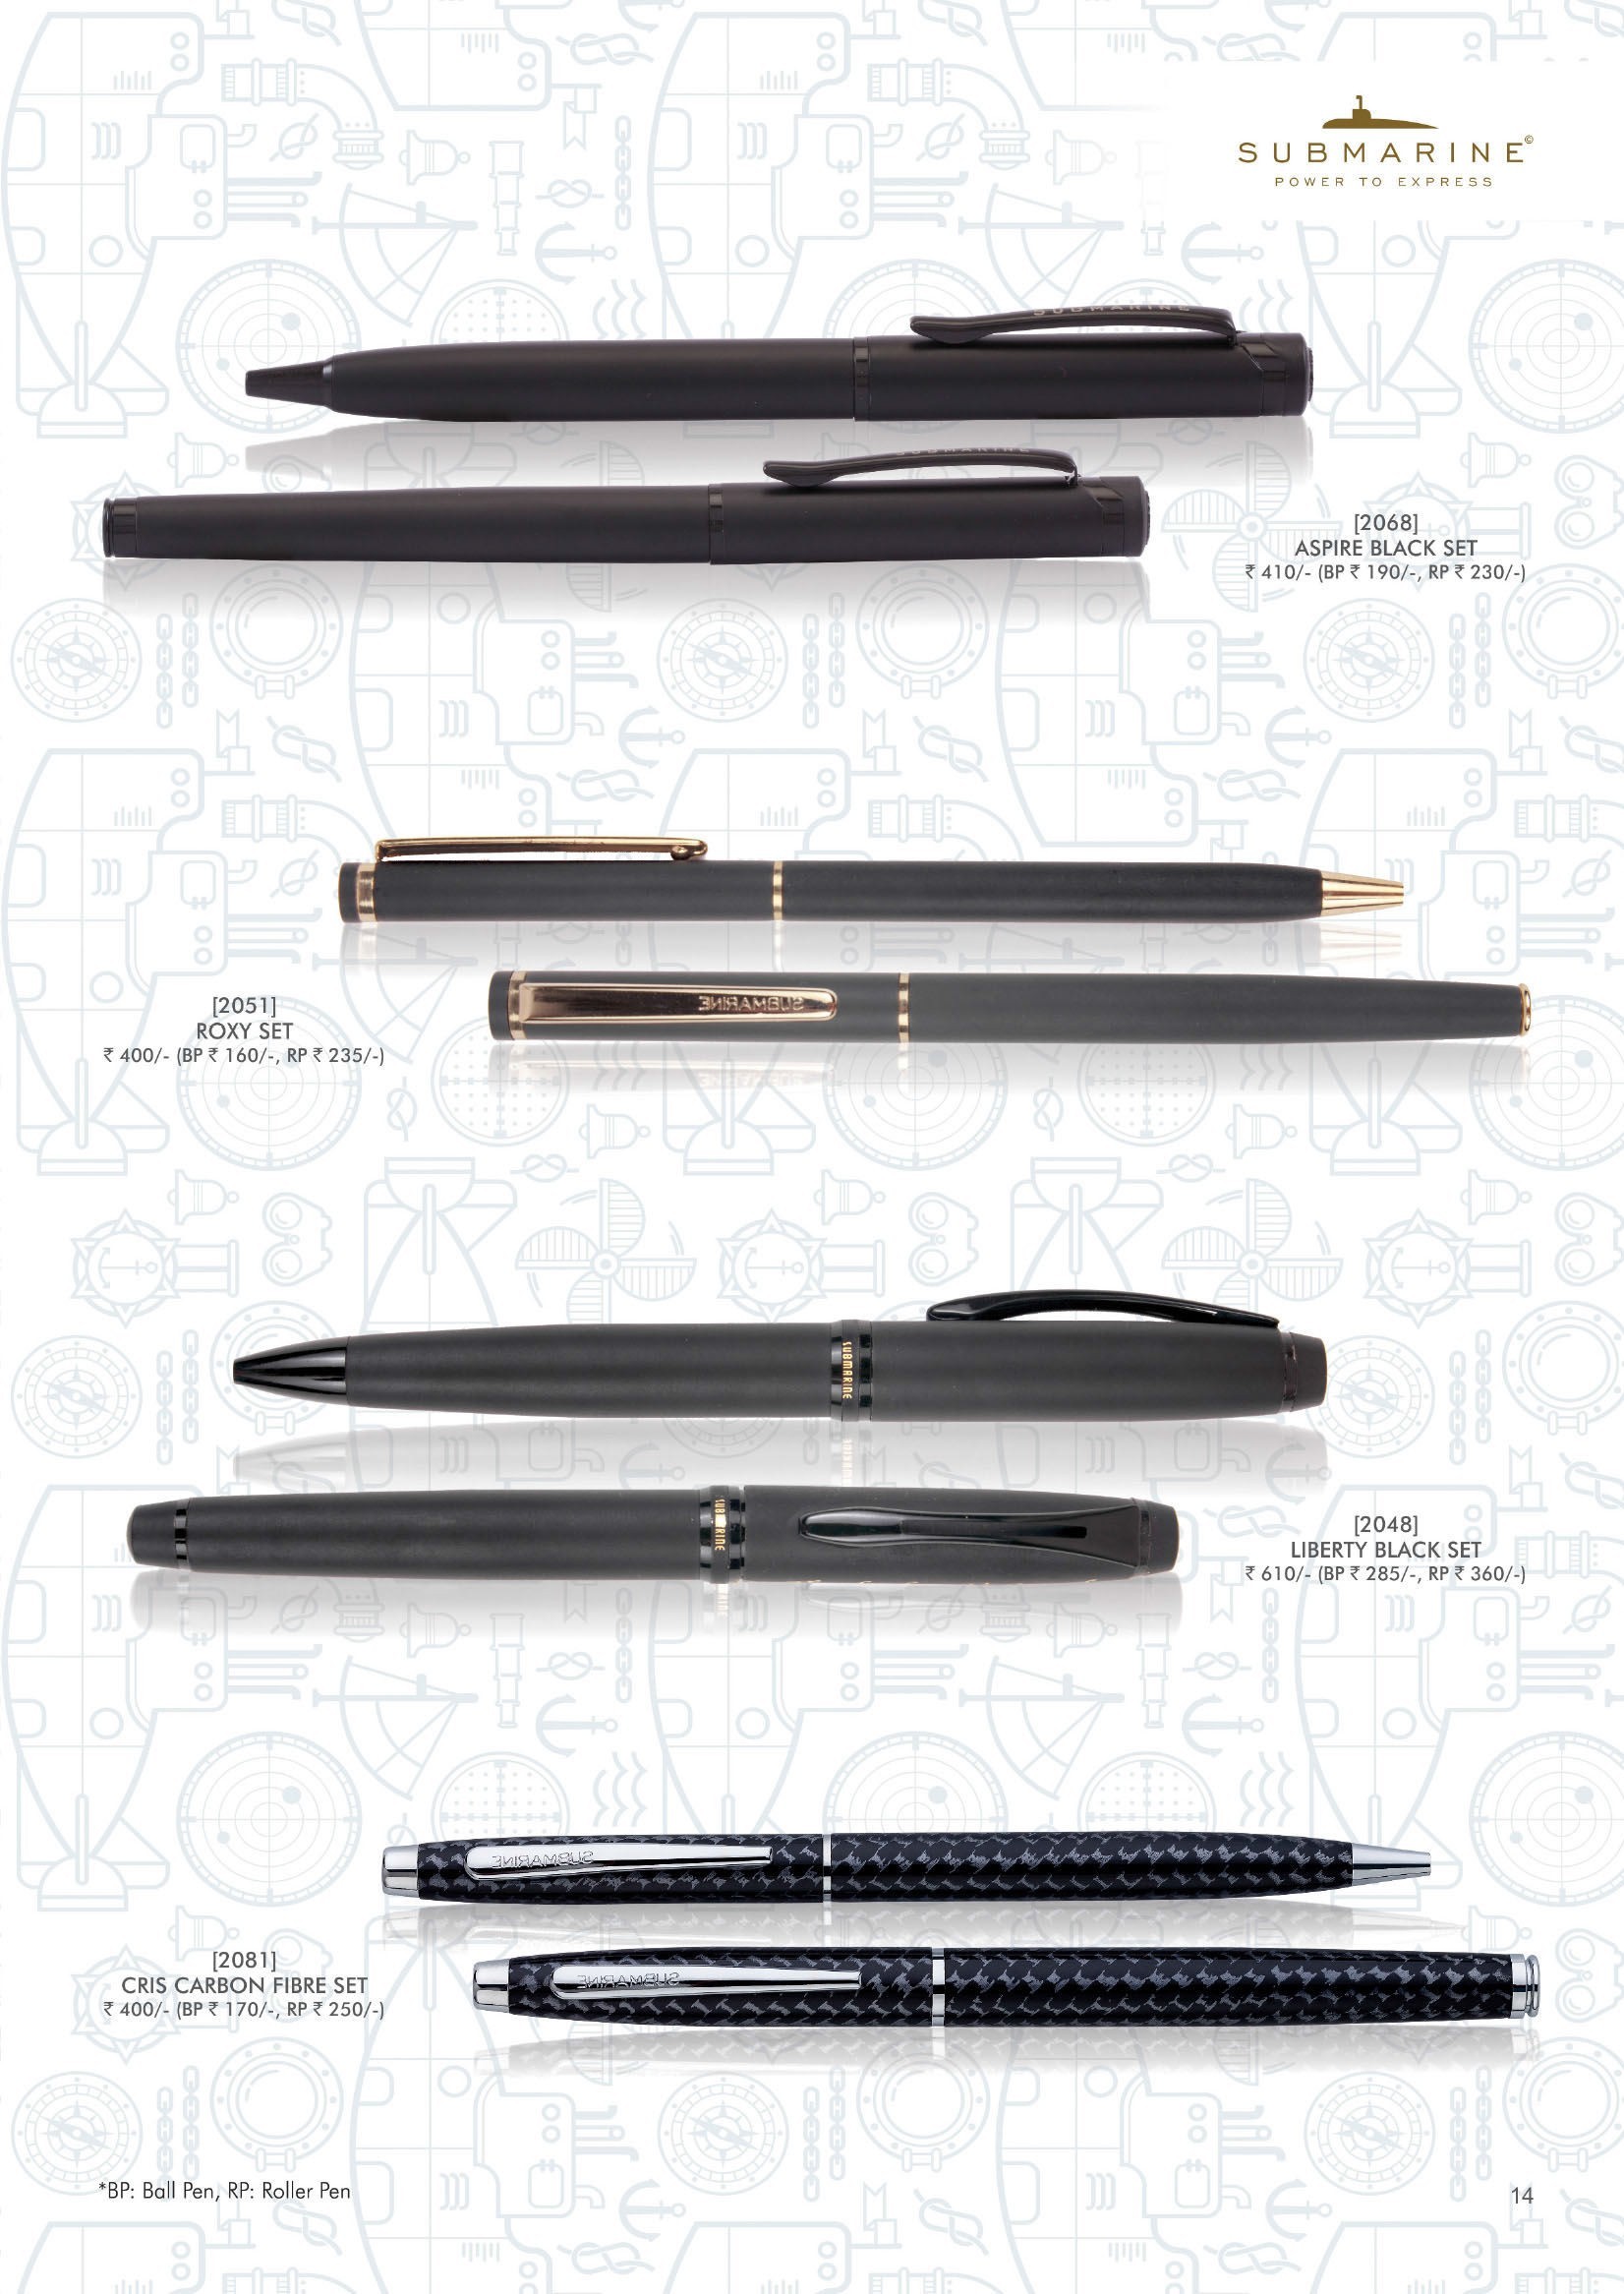 Submarine pens14